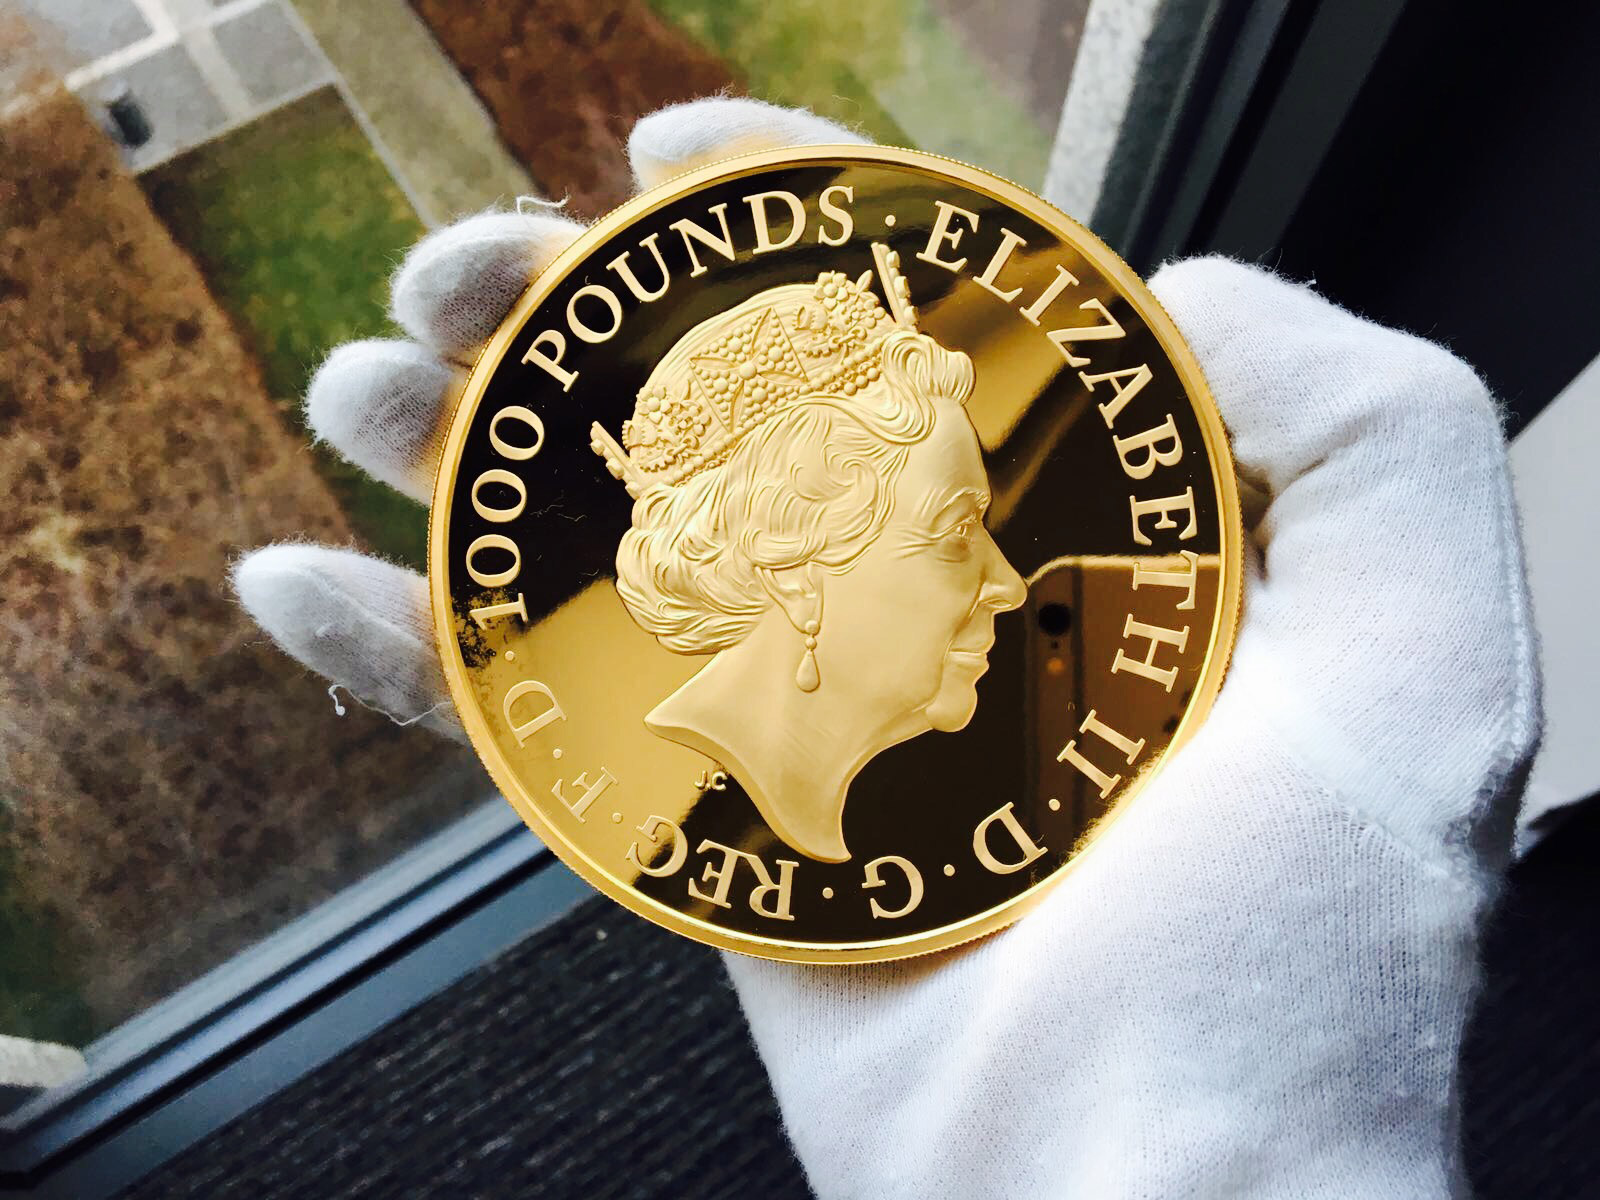 65 let vlády královny Alžběty II. zvěčněno na minci vyražené z nejčistšího zlata 999/1000